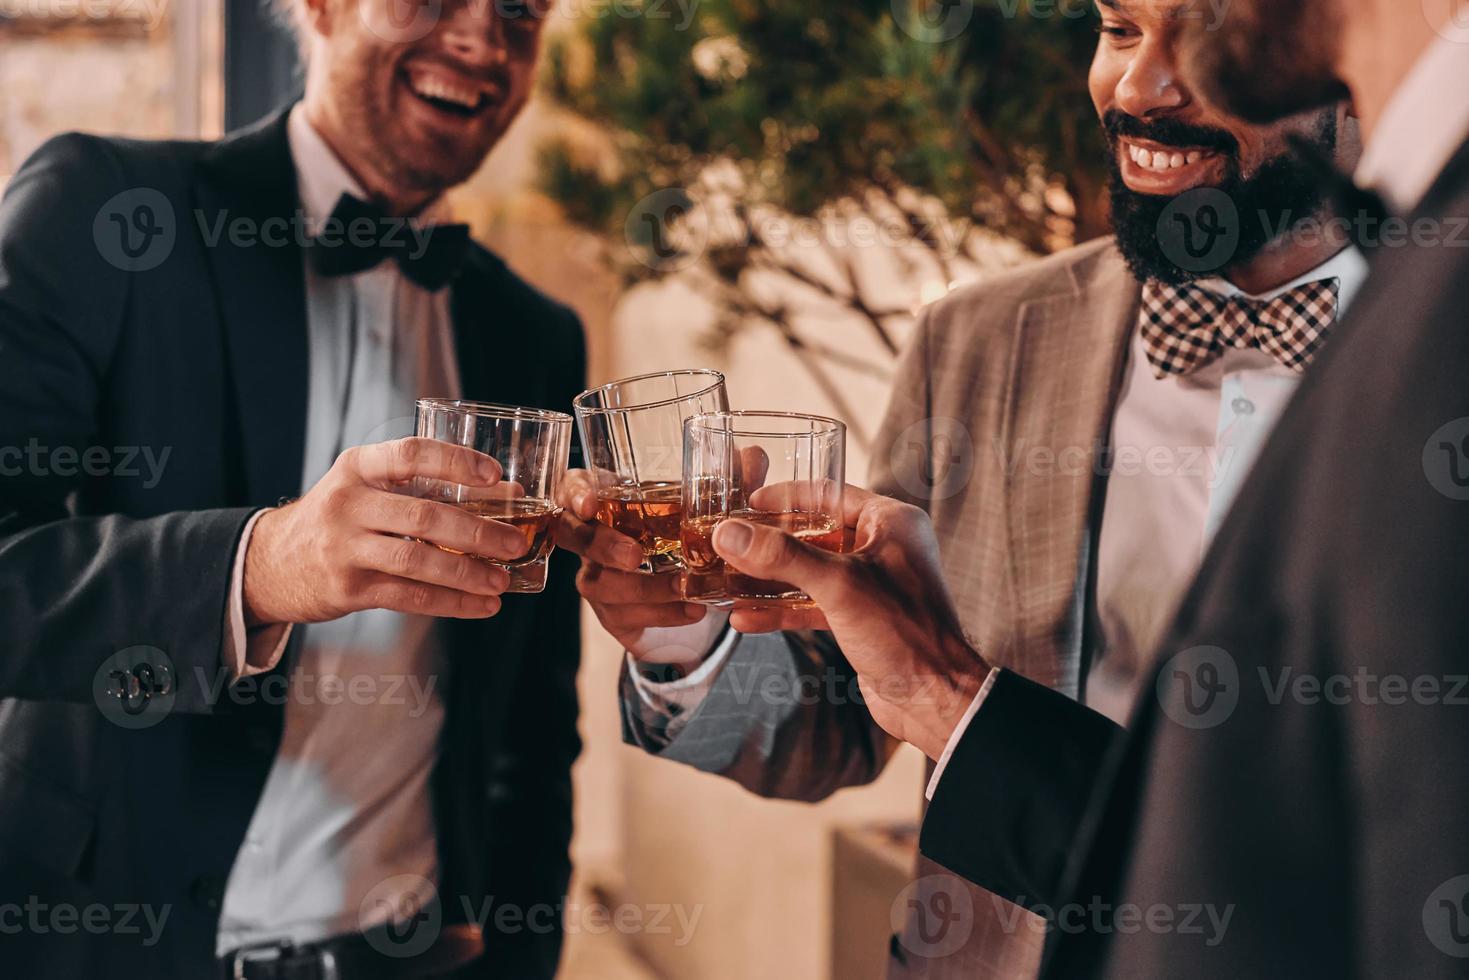 close-up de três homens bem vestidos bebendo uísque e se comunicando enquanto passam o tempo na festa foto